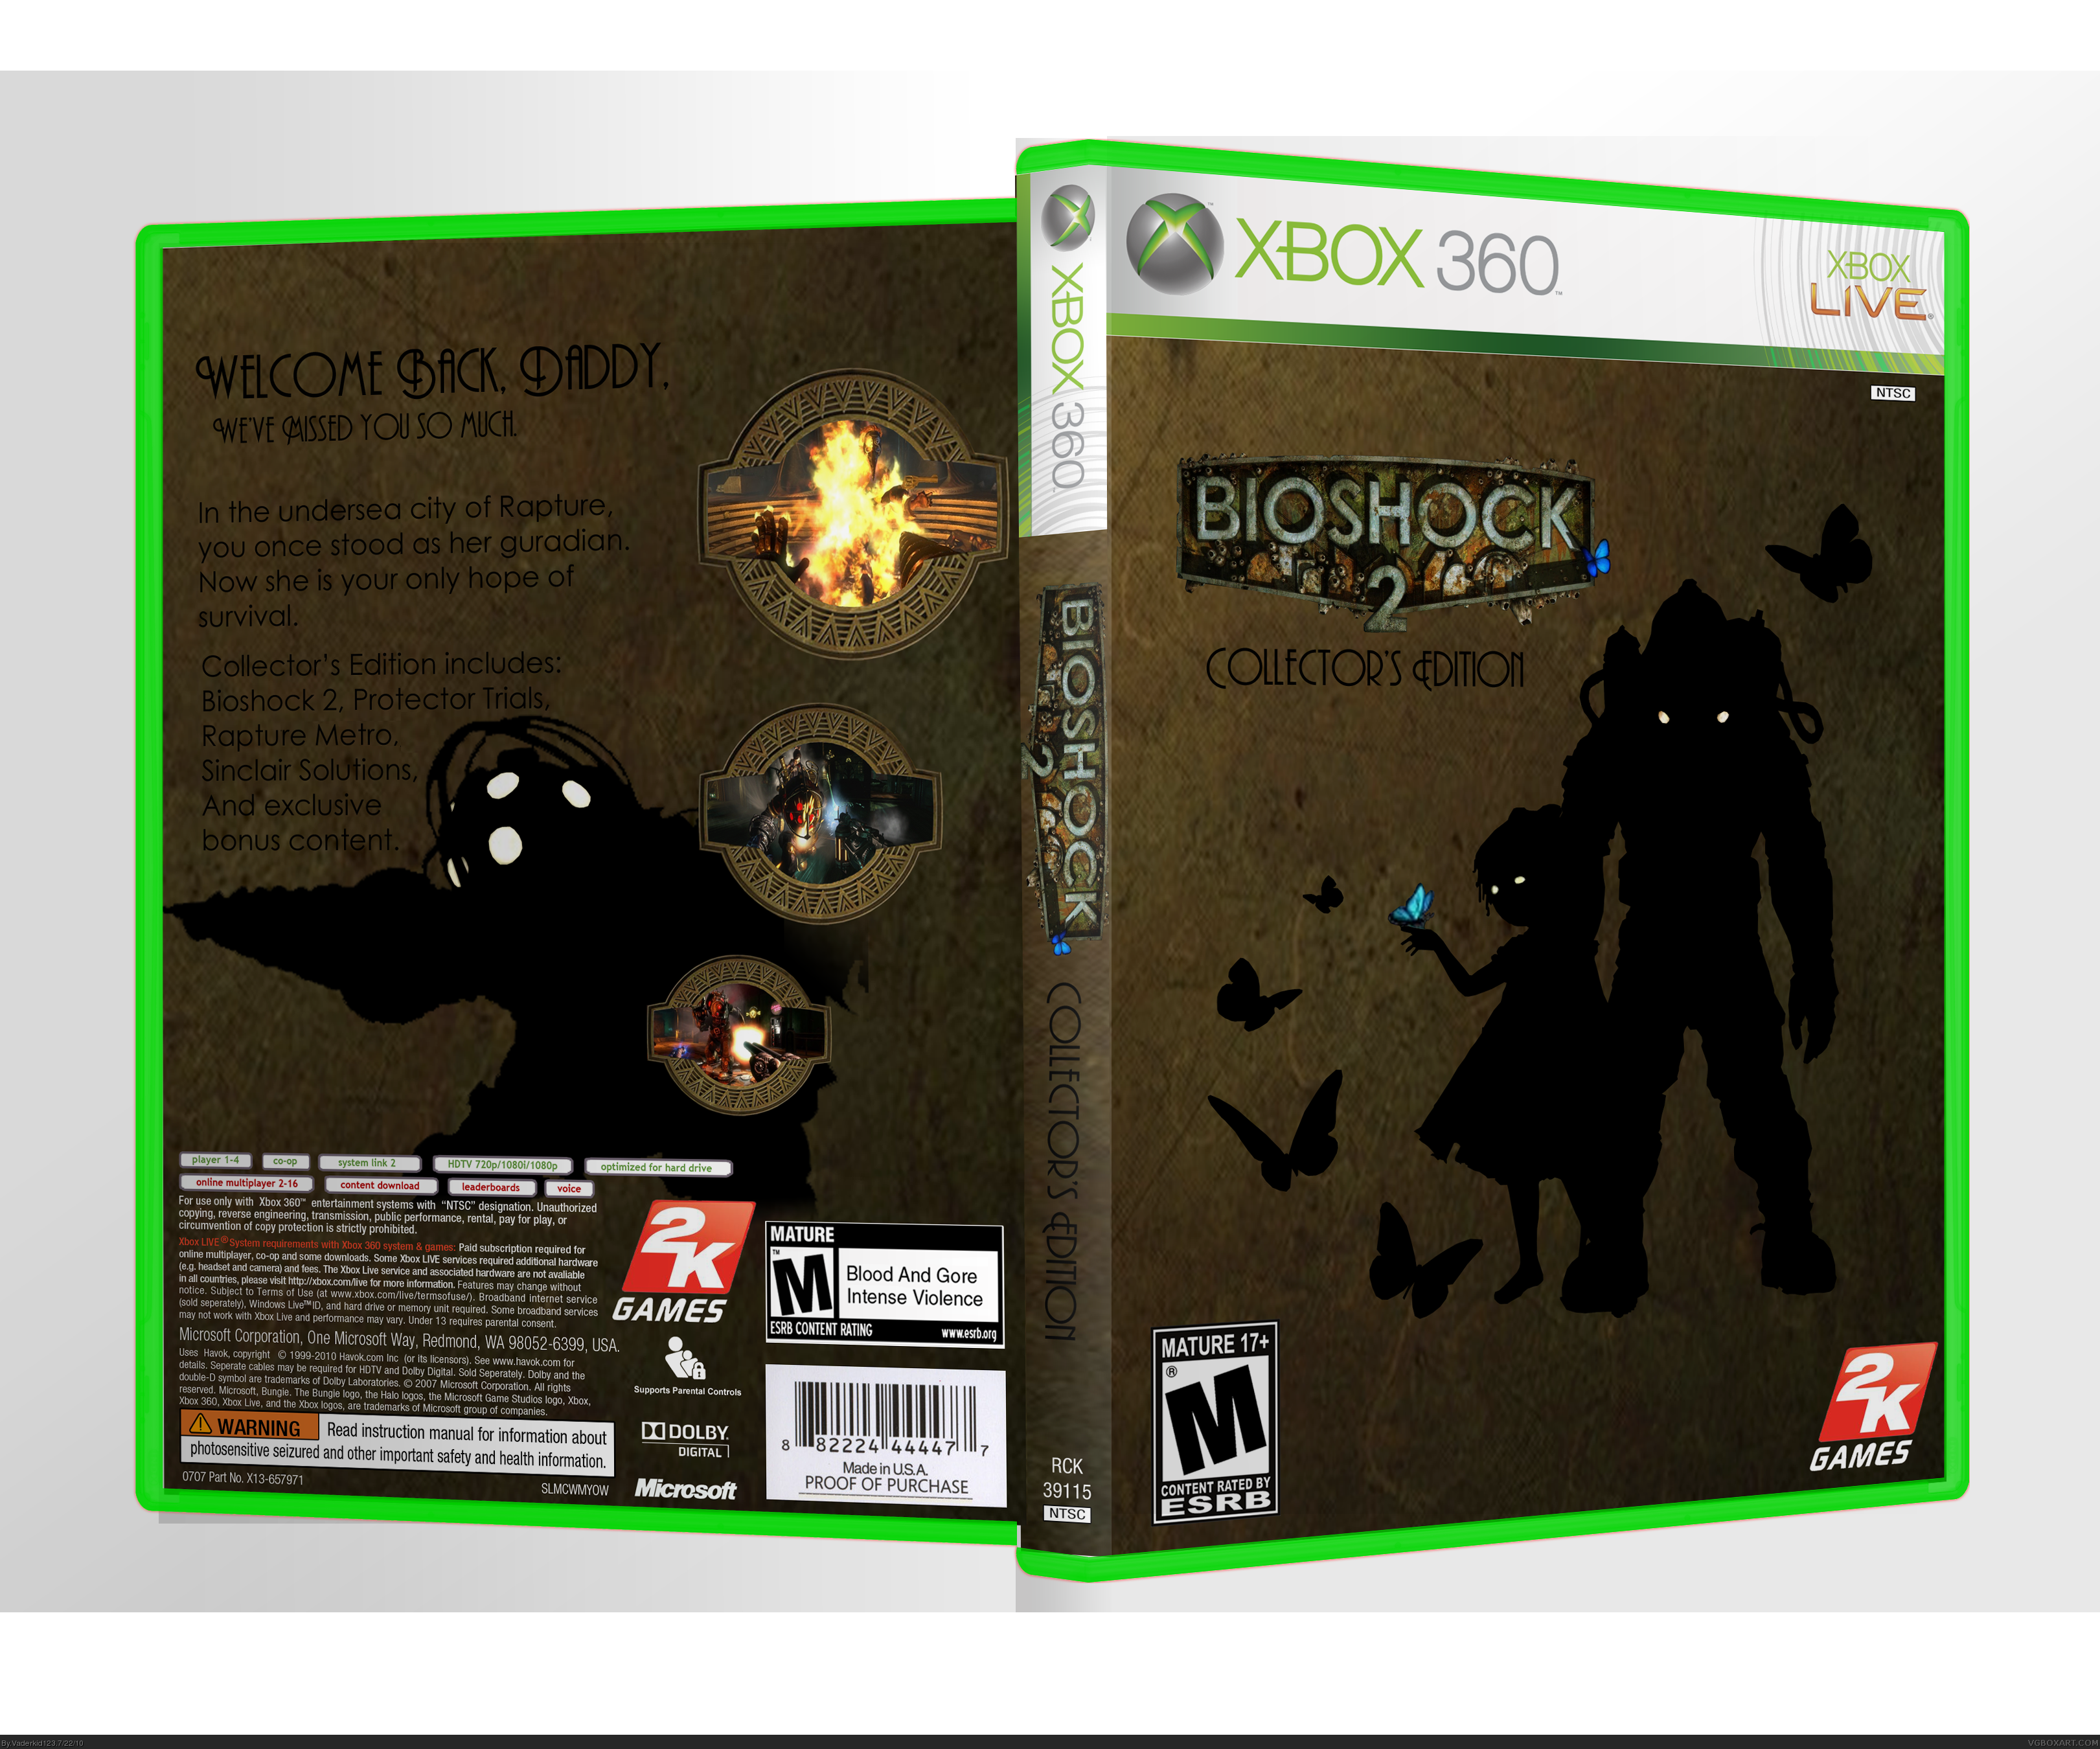 BioShock Collectors Edition box cover